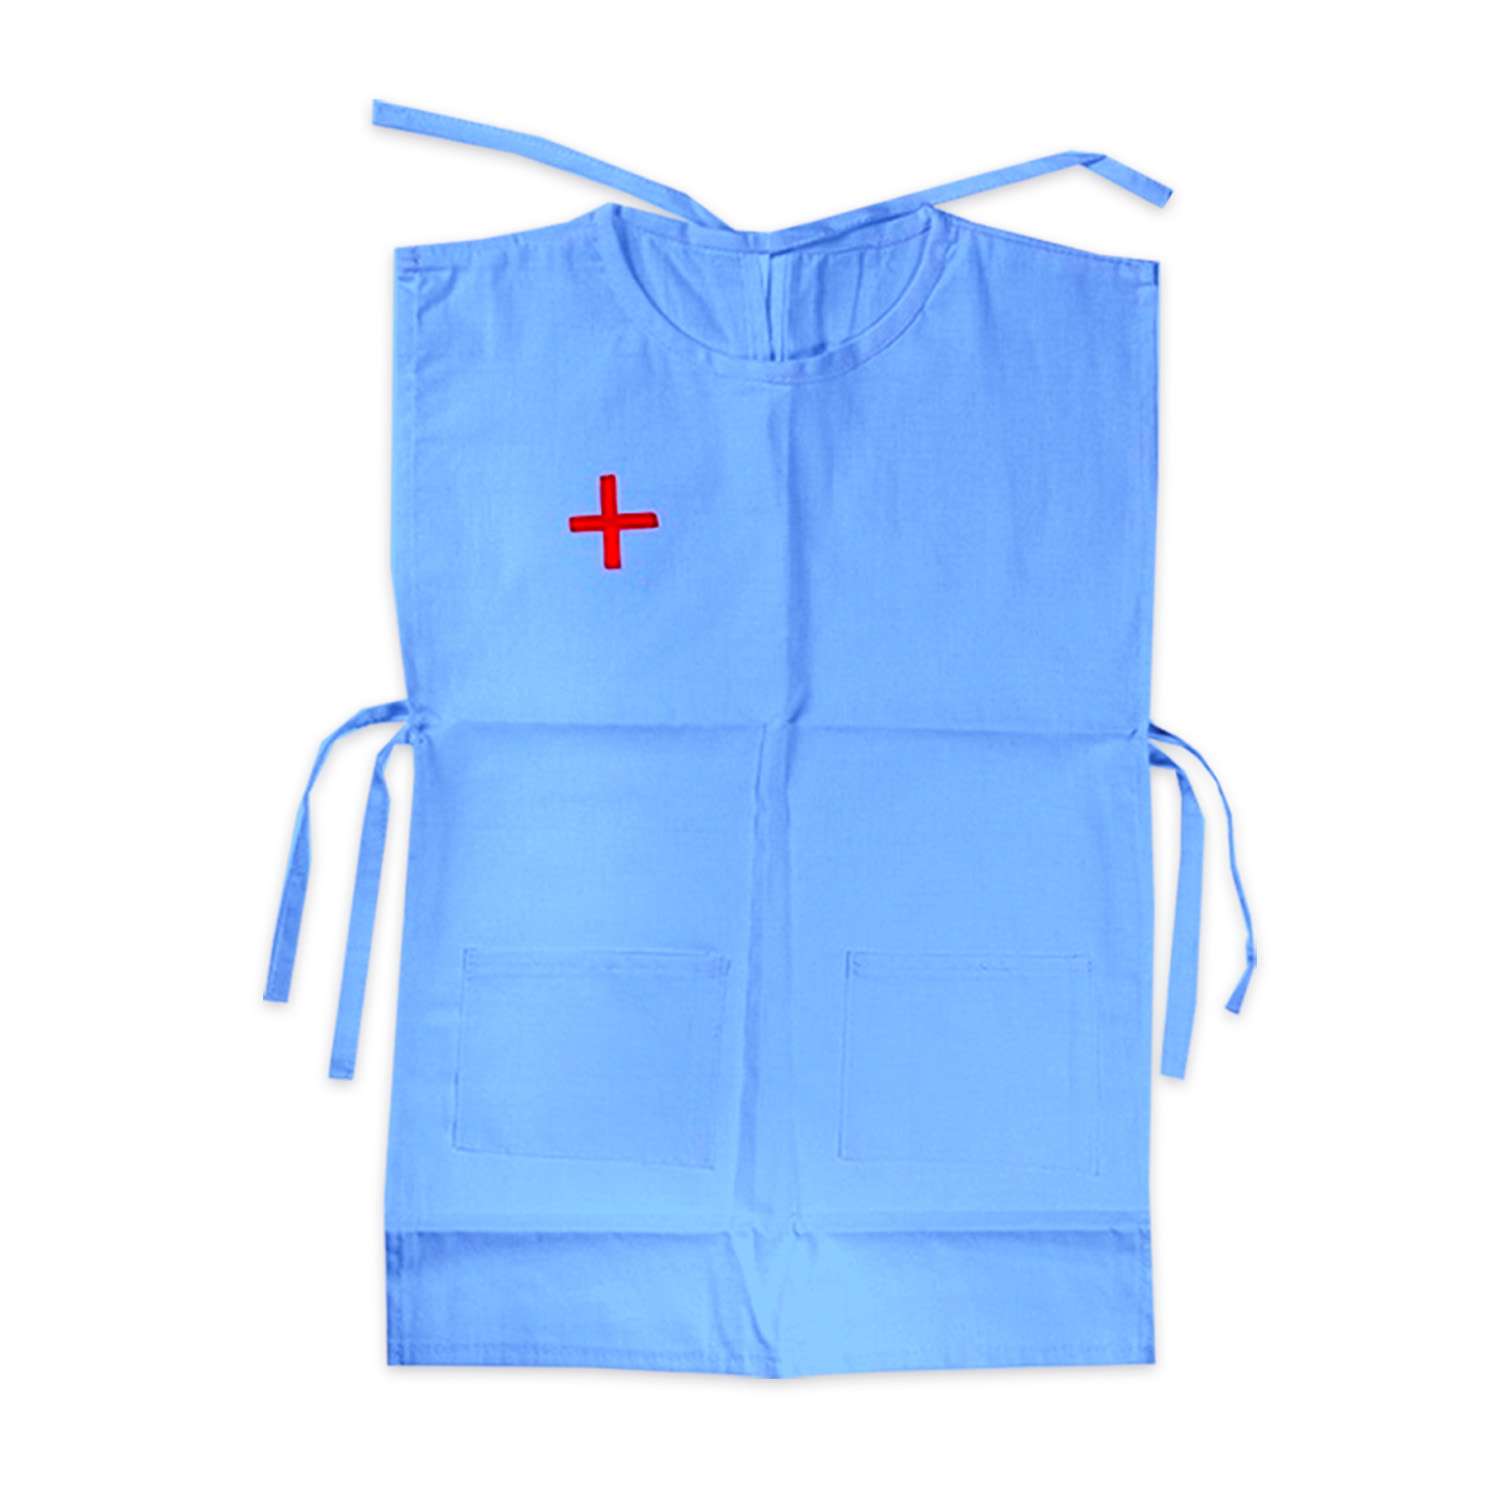 Костюм Тутси игровой набор Докторёнок голубой фартук колпак сумочка 802-2022 - фото 2